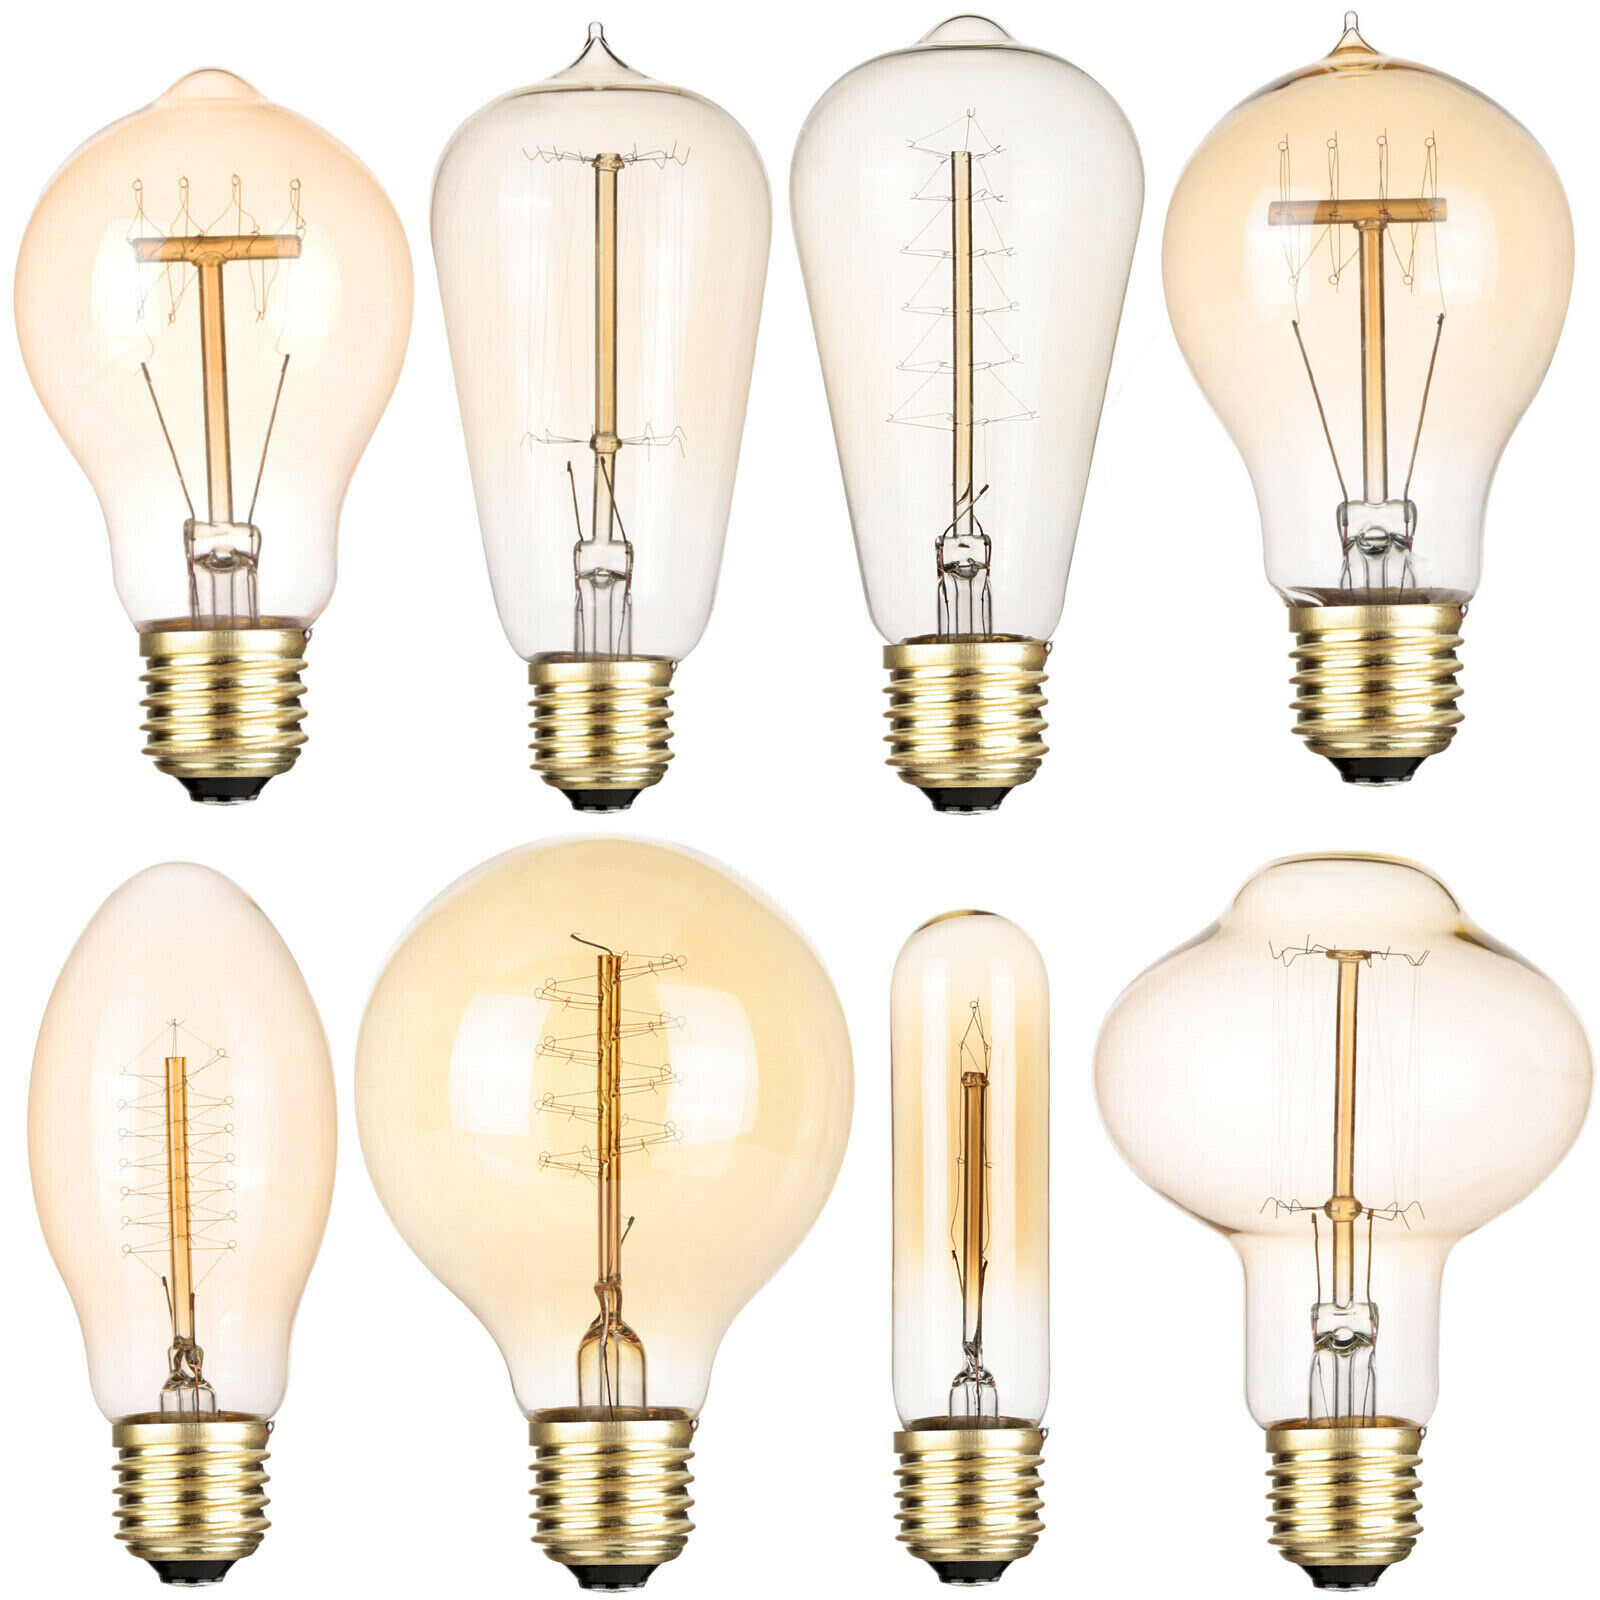 binding Elegance Fugtighed 220V Vintage Industrial Retro LED Edison Bulb E27 40W Filament Light Deco  Lamp S | eBay